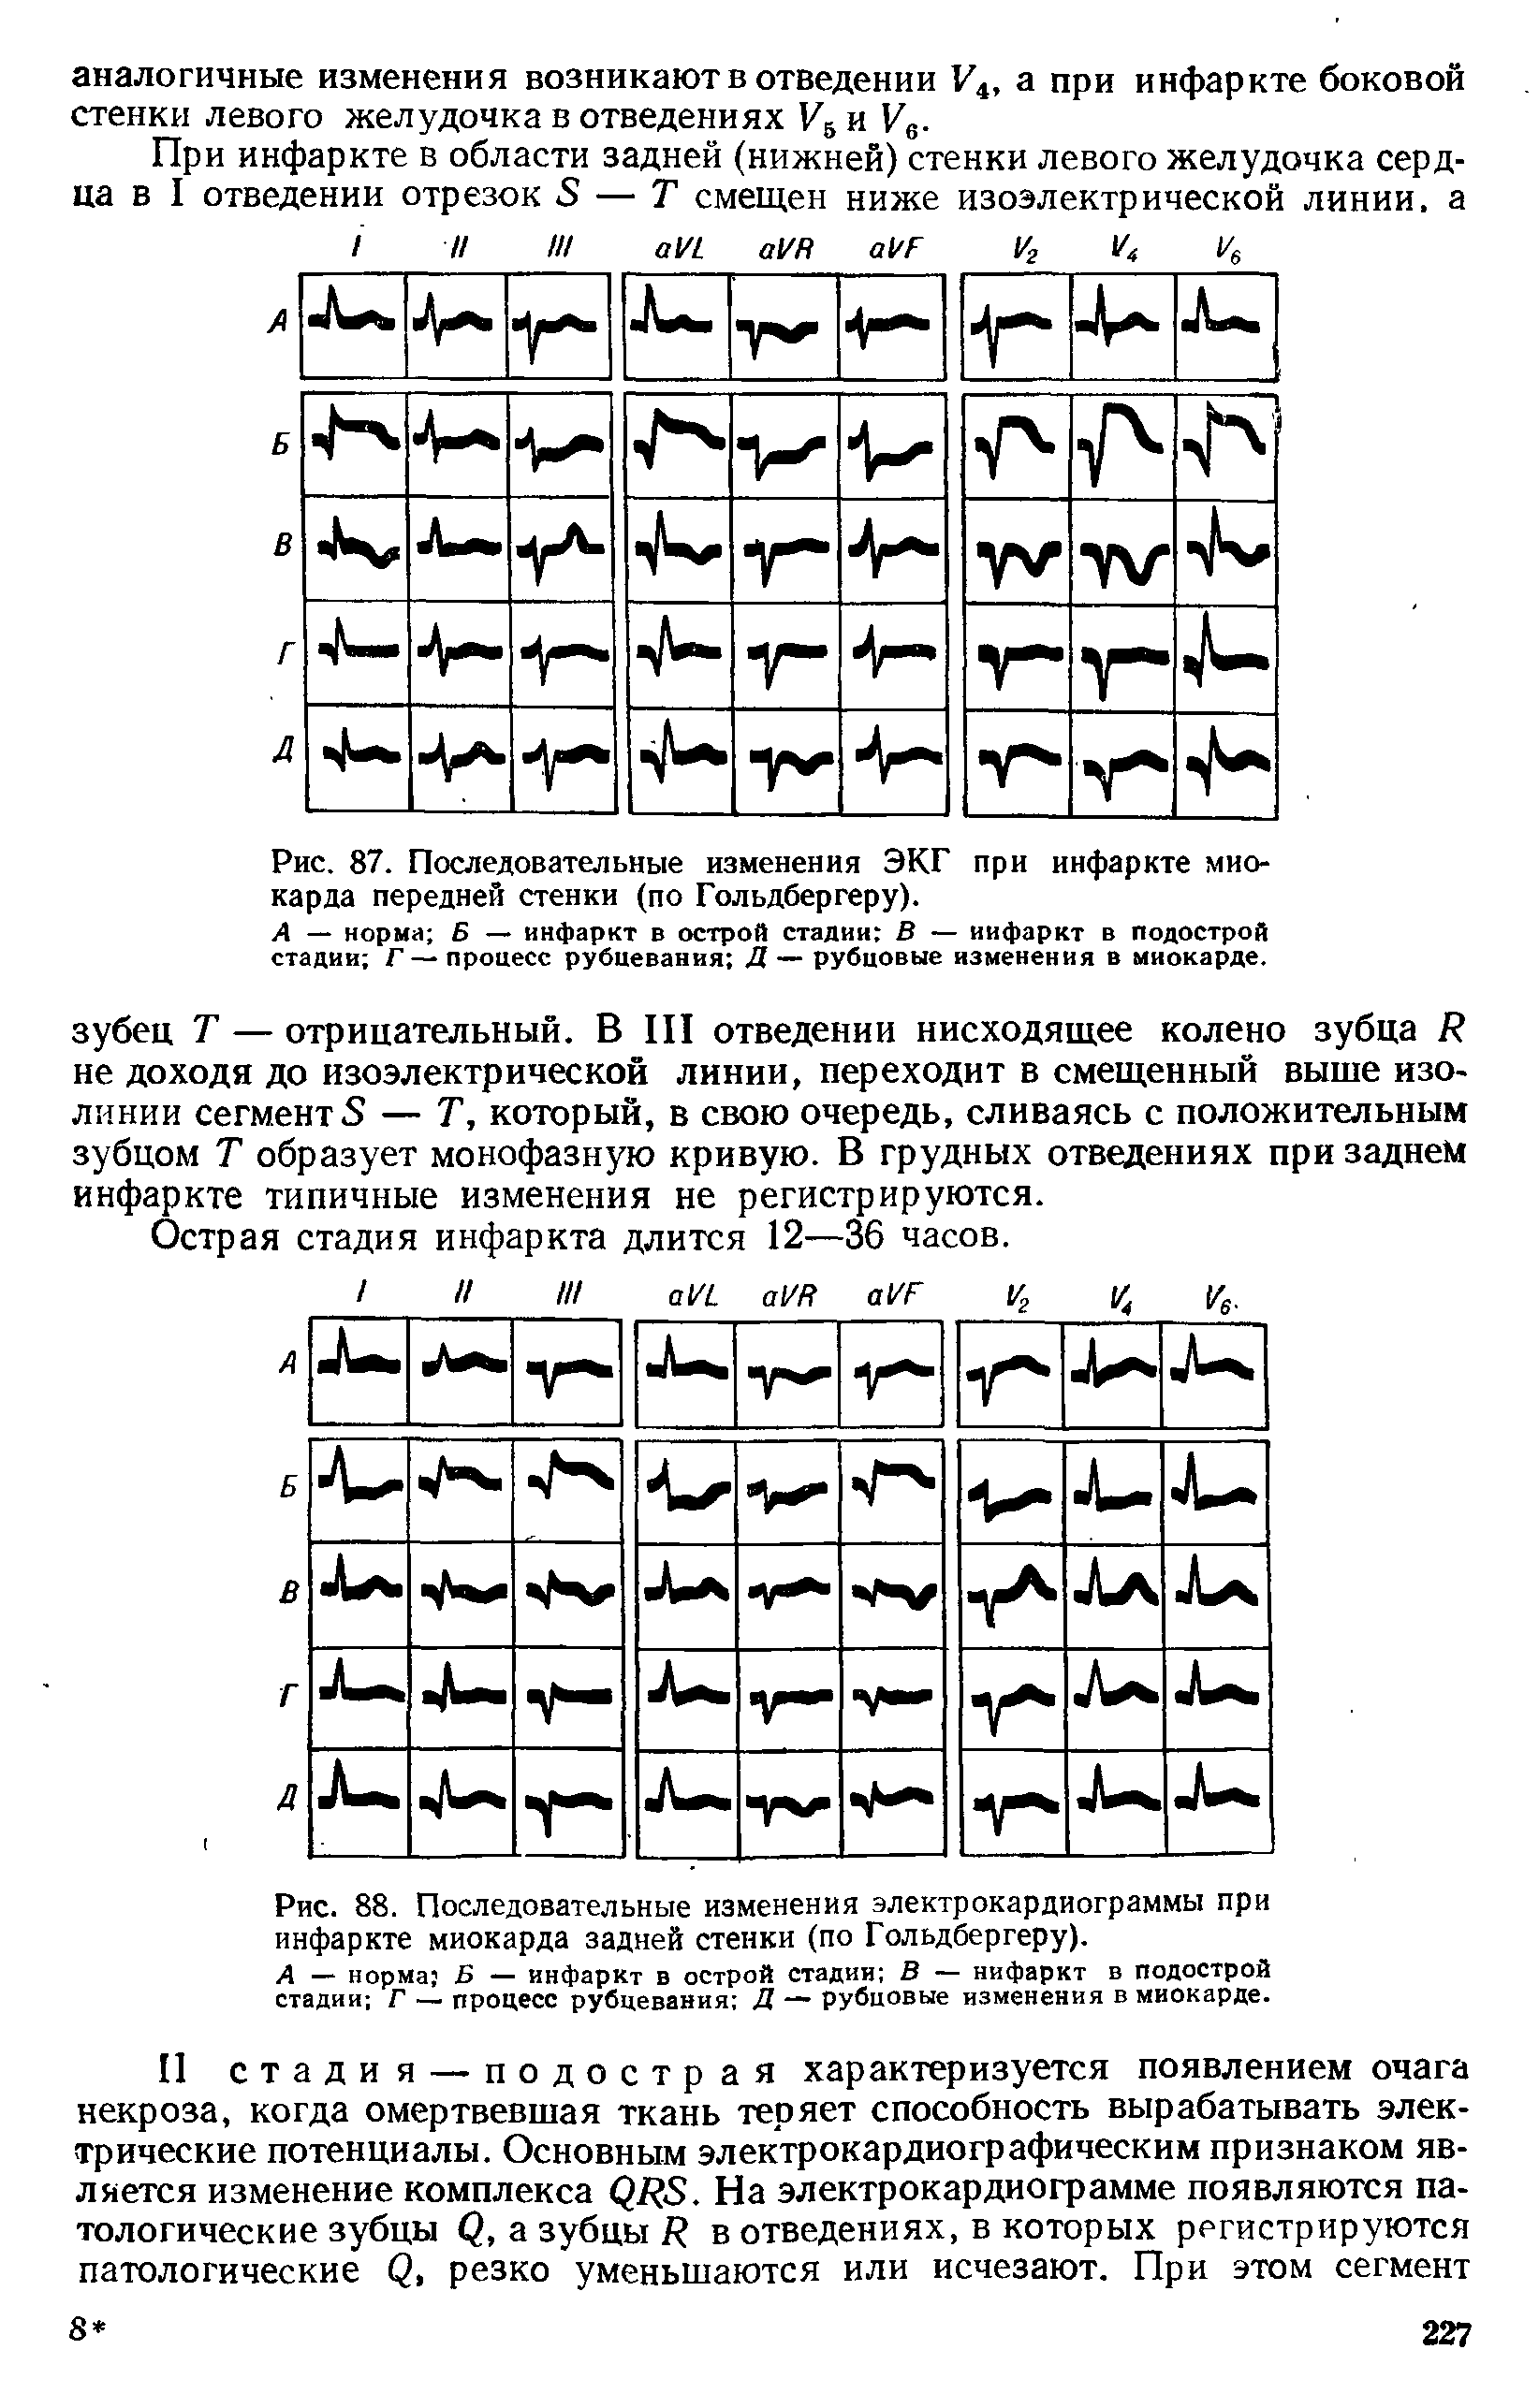 Рис. 88. Последовательные изменения электрокардиограммы при инфаркте миокарда задней стенки (по Гольдбергеру).